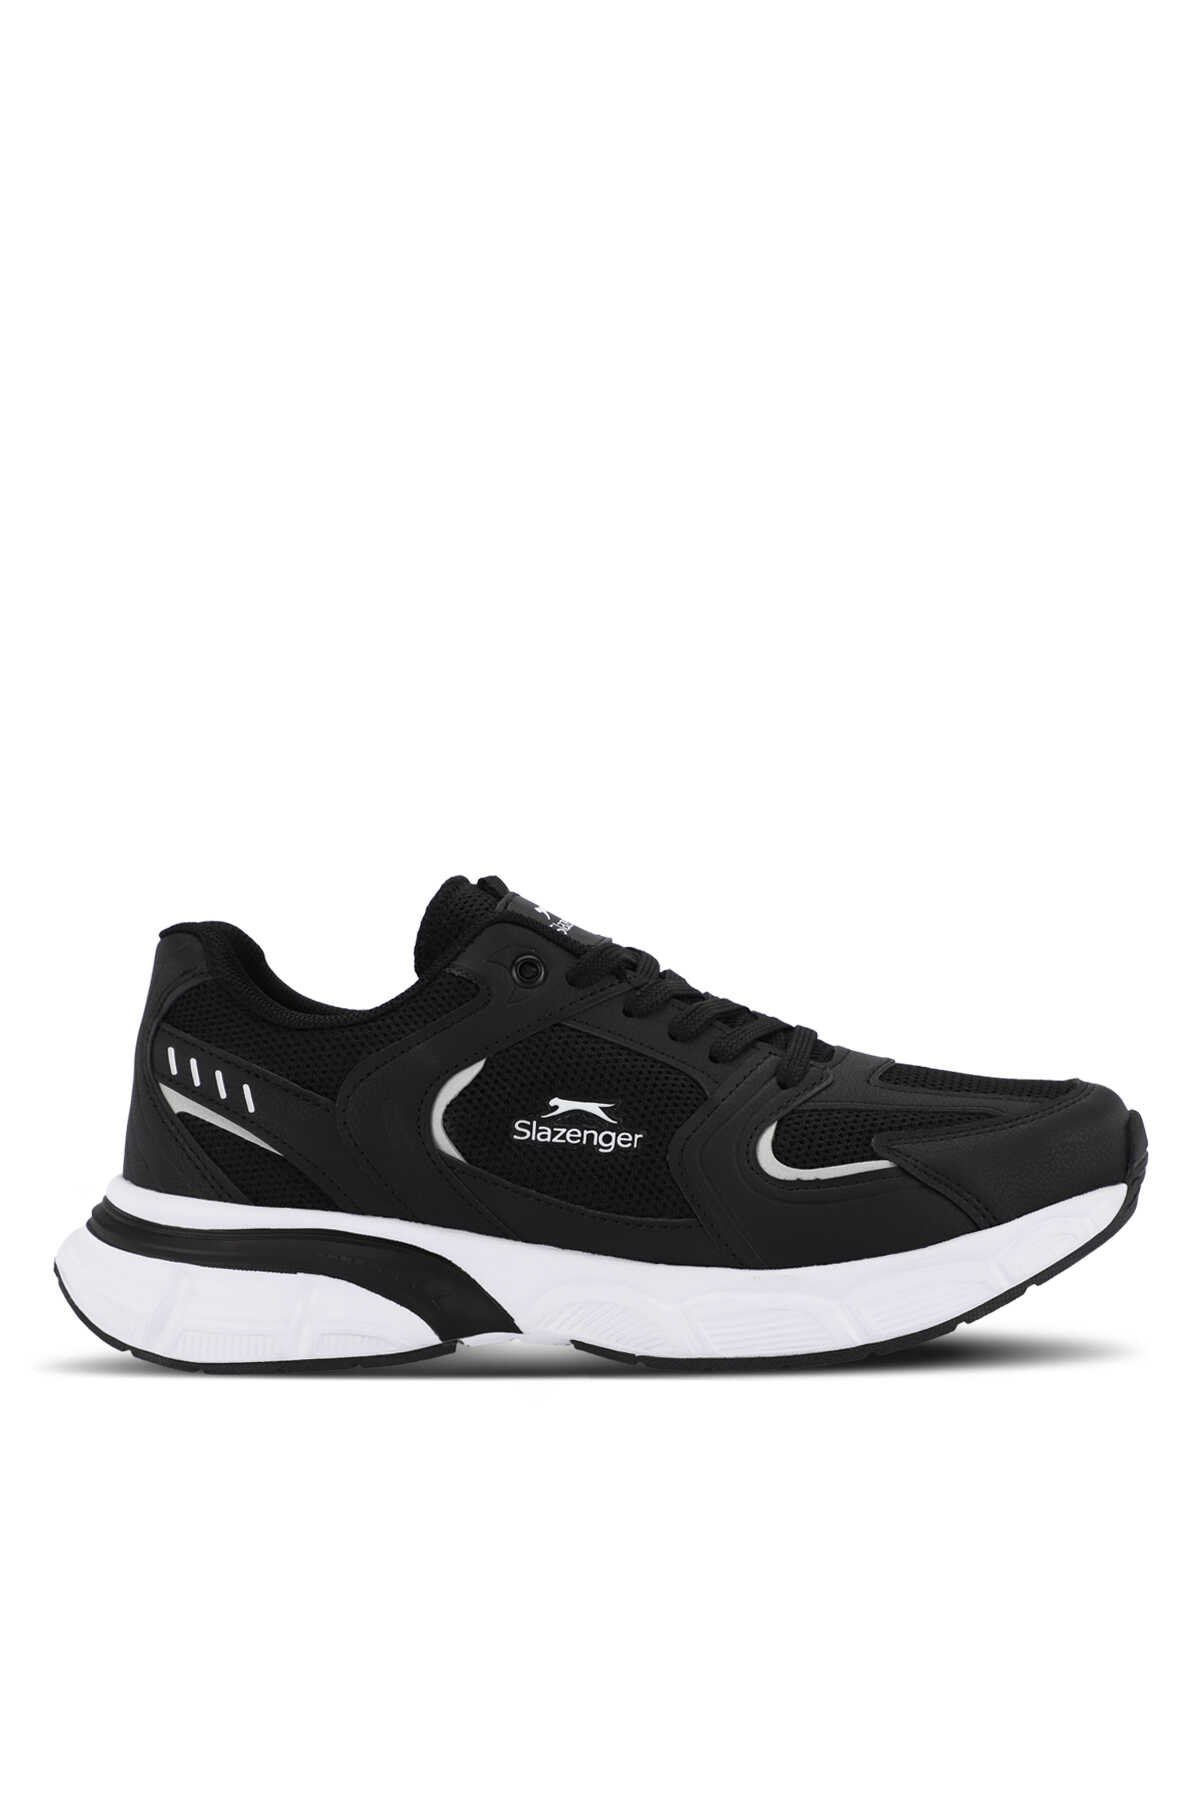 Slazenger - Slazenger ZEX Erkek Sneaker Ayakkabı Siyah / Beyaz